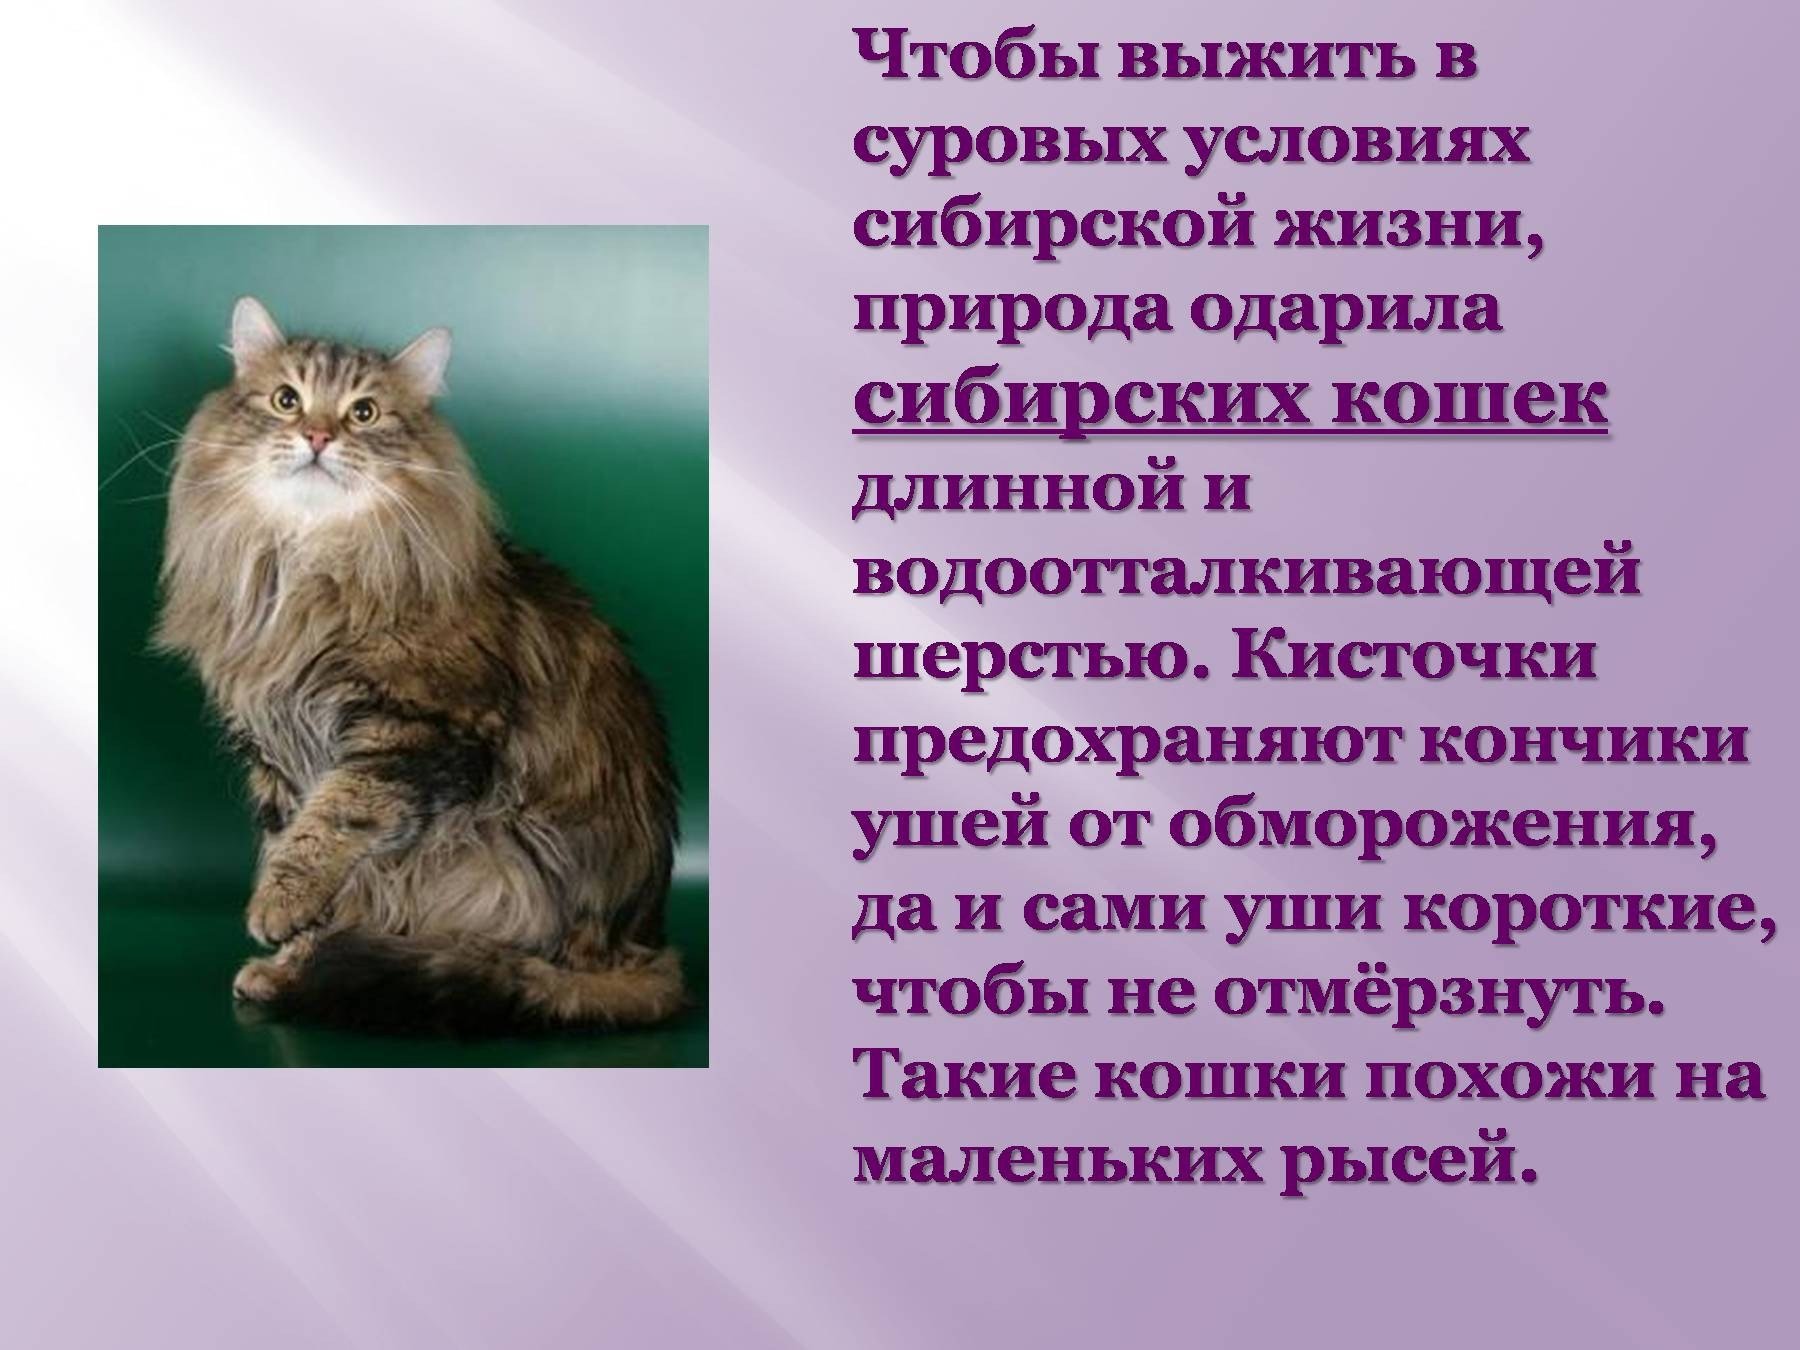 Почему кошка любимое животное. Доклад про кошек. Рассказ о сибирской кошке. Проект про кошек домашних. Презентация на тему кошки.